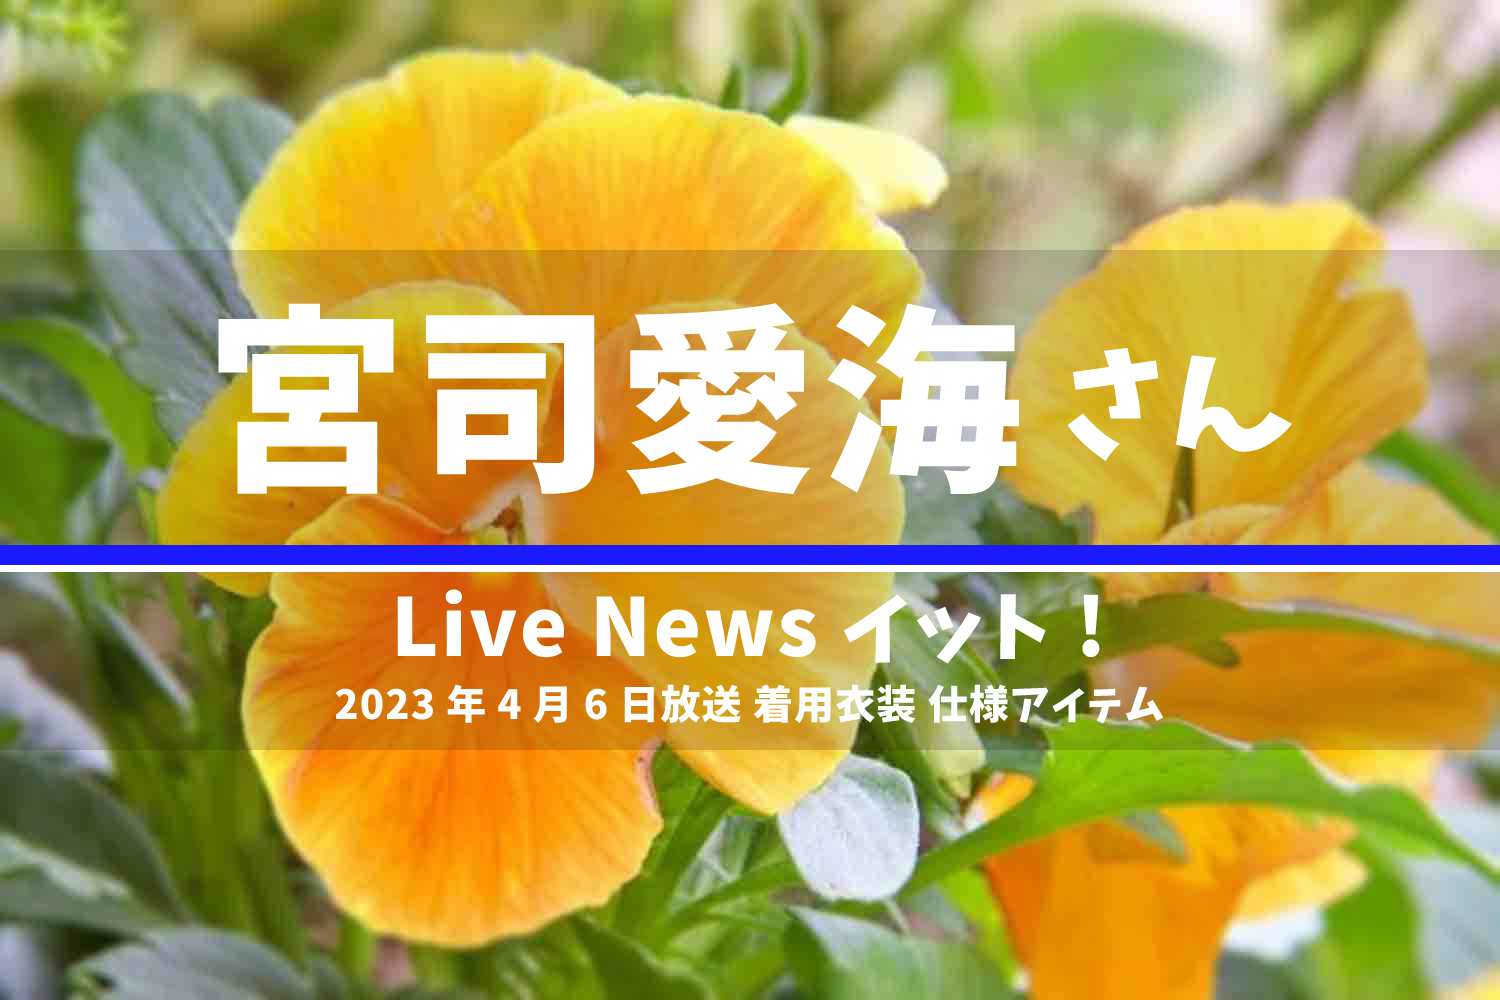 Live News イット! 宮司愛海さん 番組 衣装 2023年4月6日放送